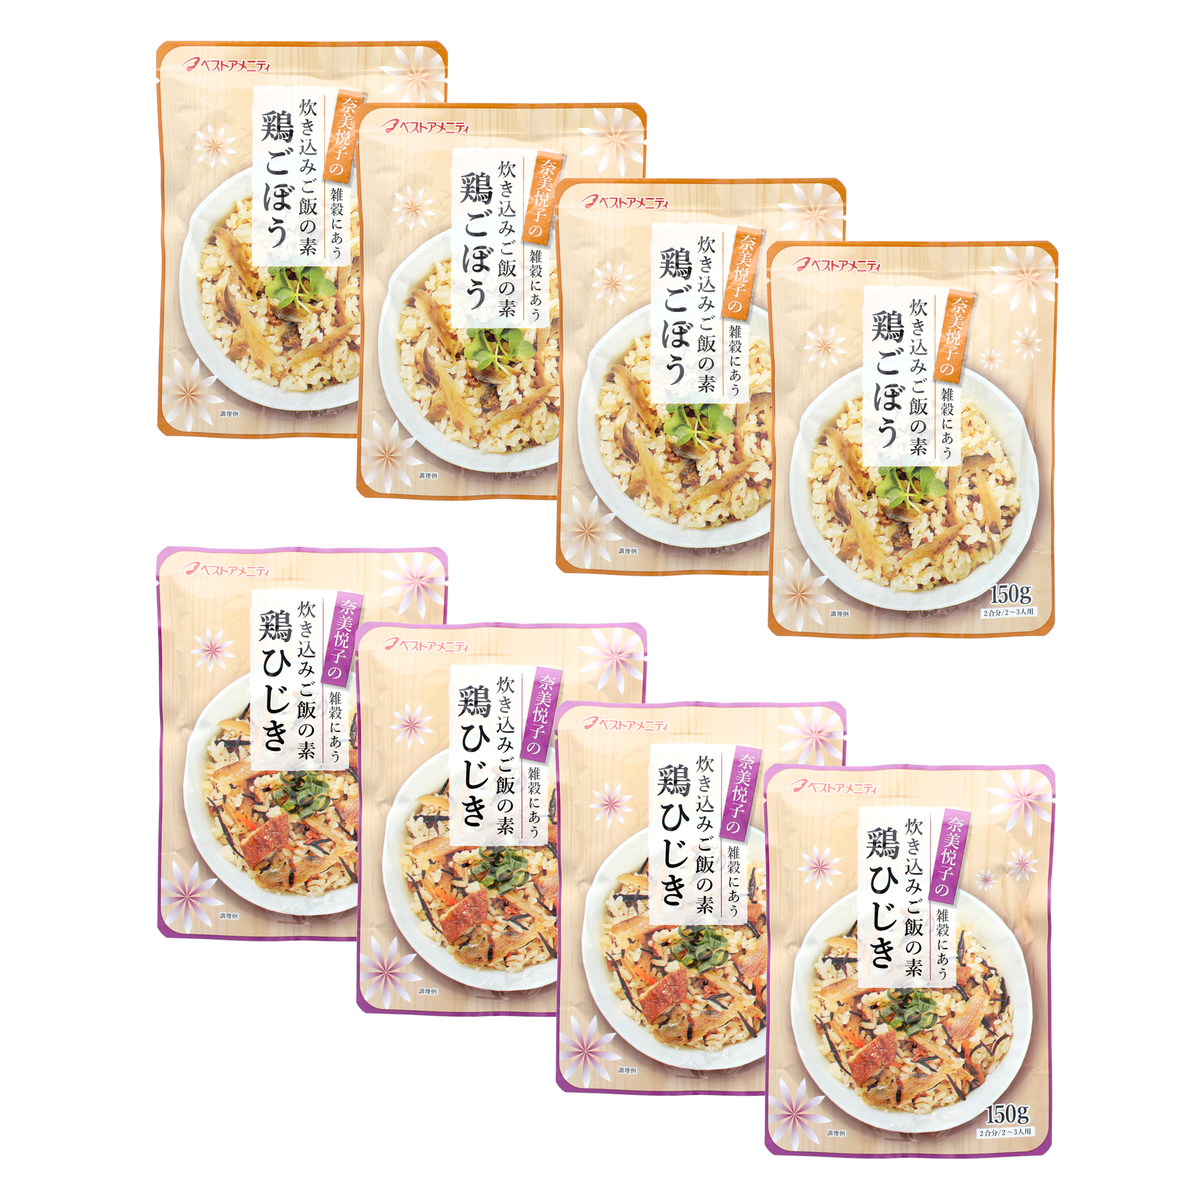 奈美悦子の雑穀と炊き込みご飯の素セット 品多く - 米・雑穀・粉類